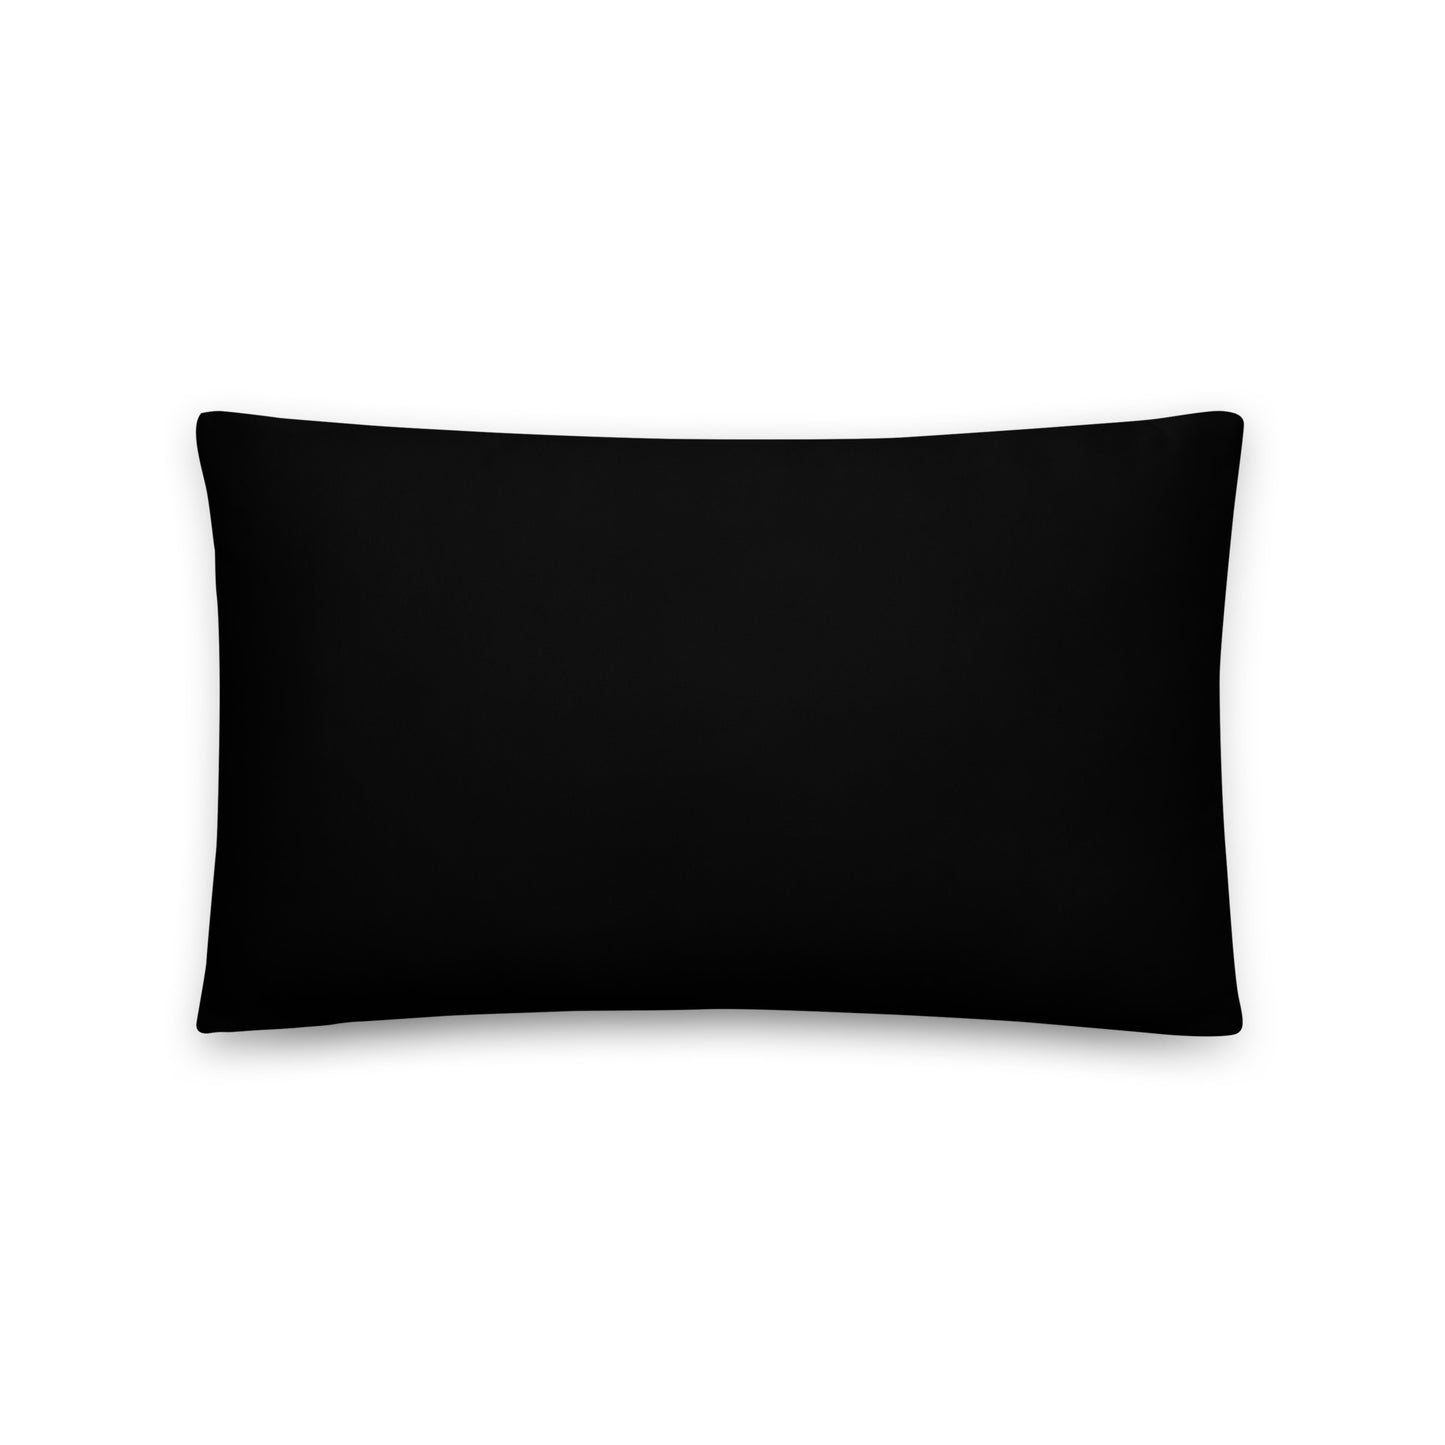 Alma Georgia Basic Pillow